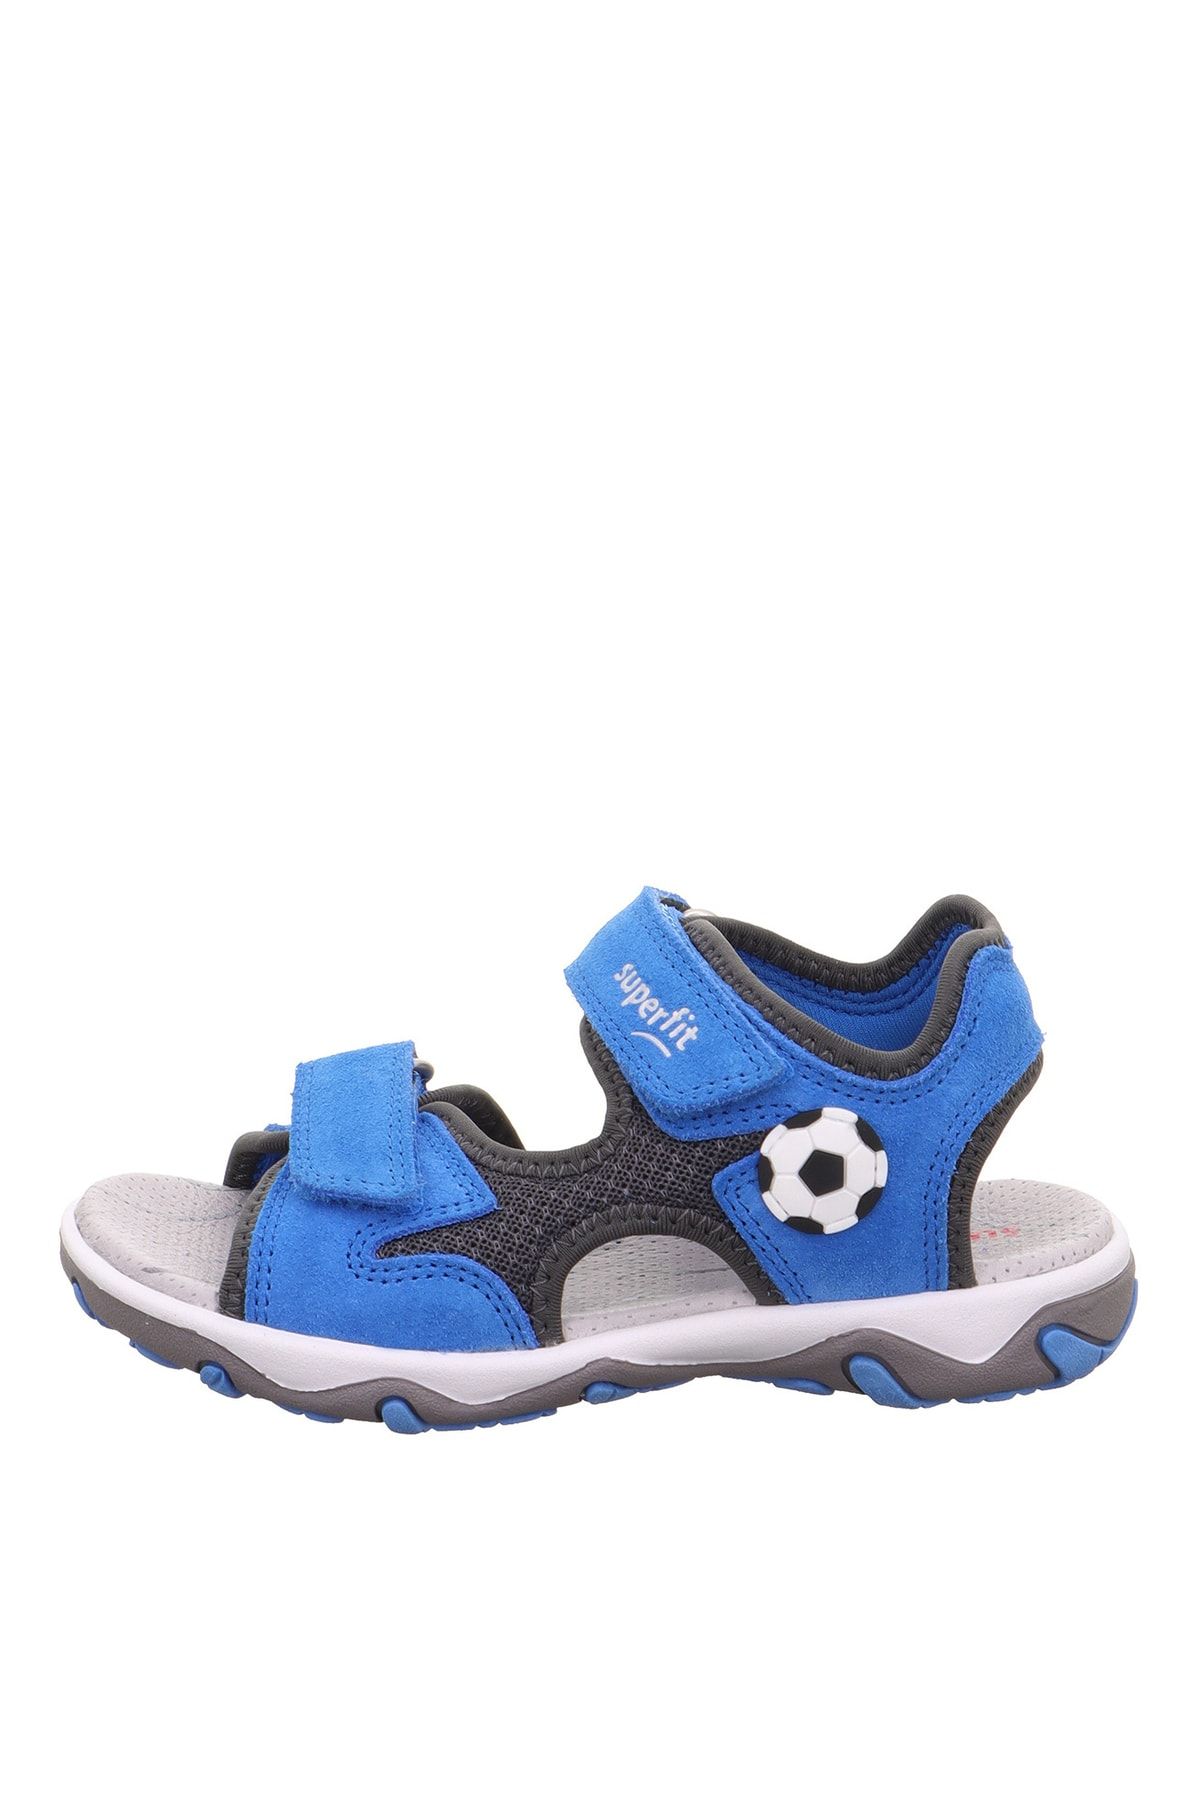 Superfit Mavi - Gri Erkek Çocuk Sandalet Mıke 3.0 1-009469-8040-2